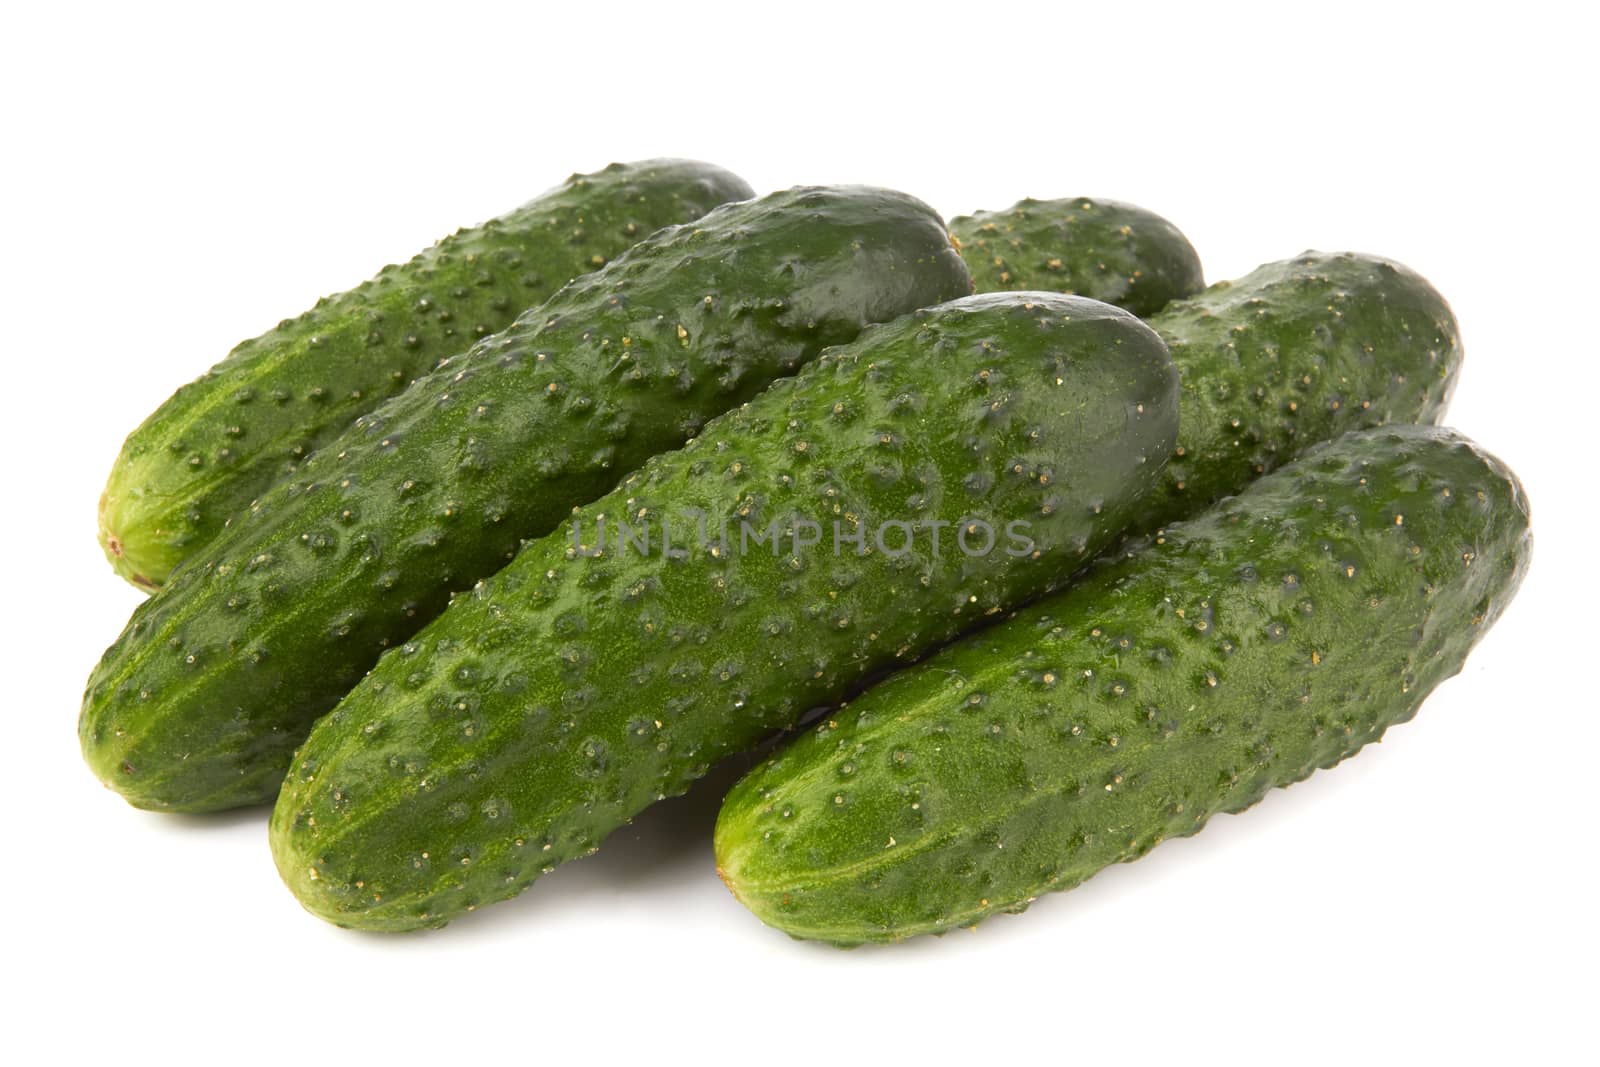 cucumbers by pioneer111